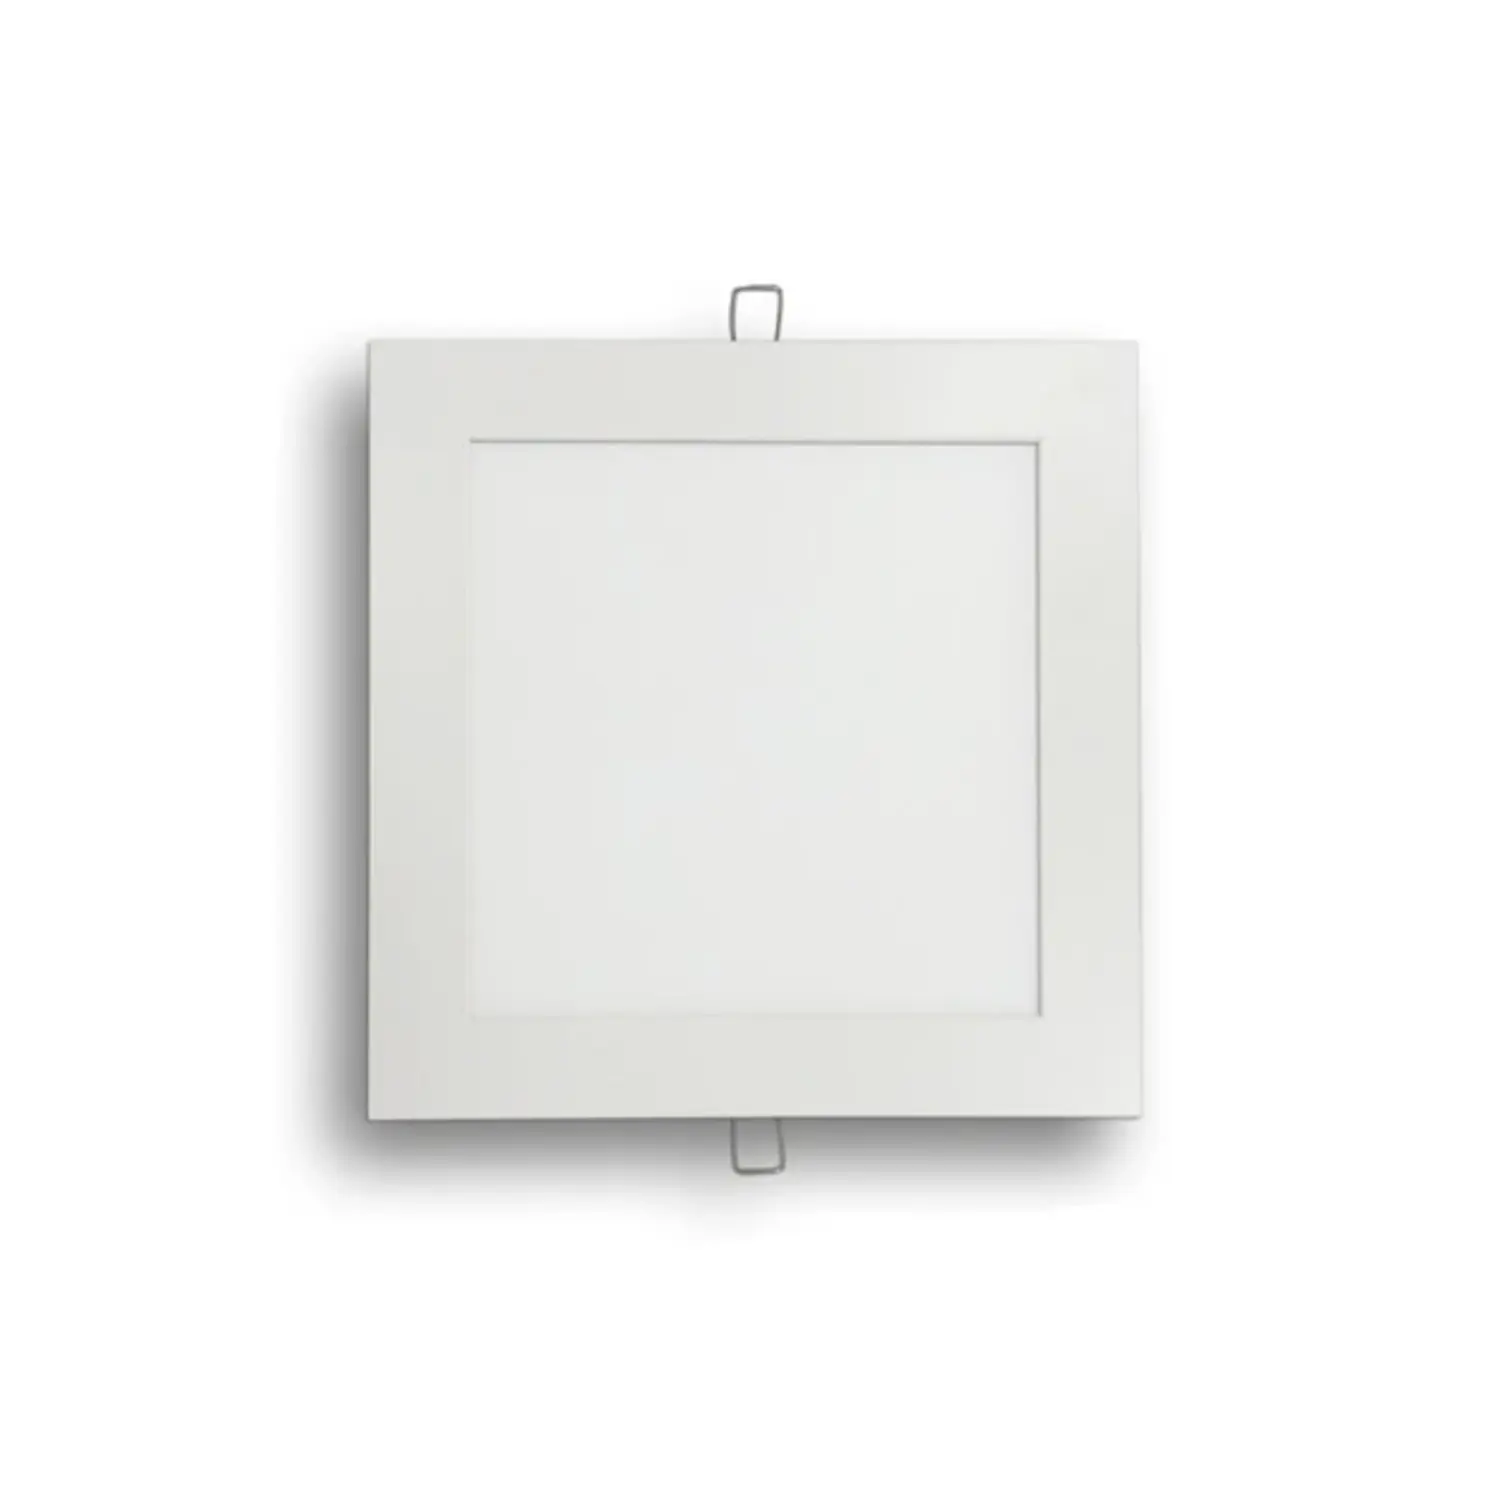 immagine del prodotto pannello led slim faretto incasso 18 watt bianco freddo quadrato